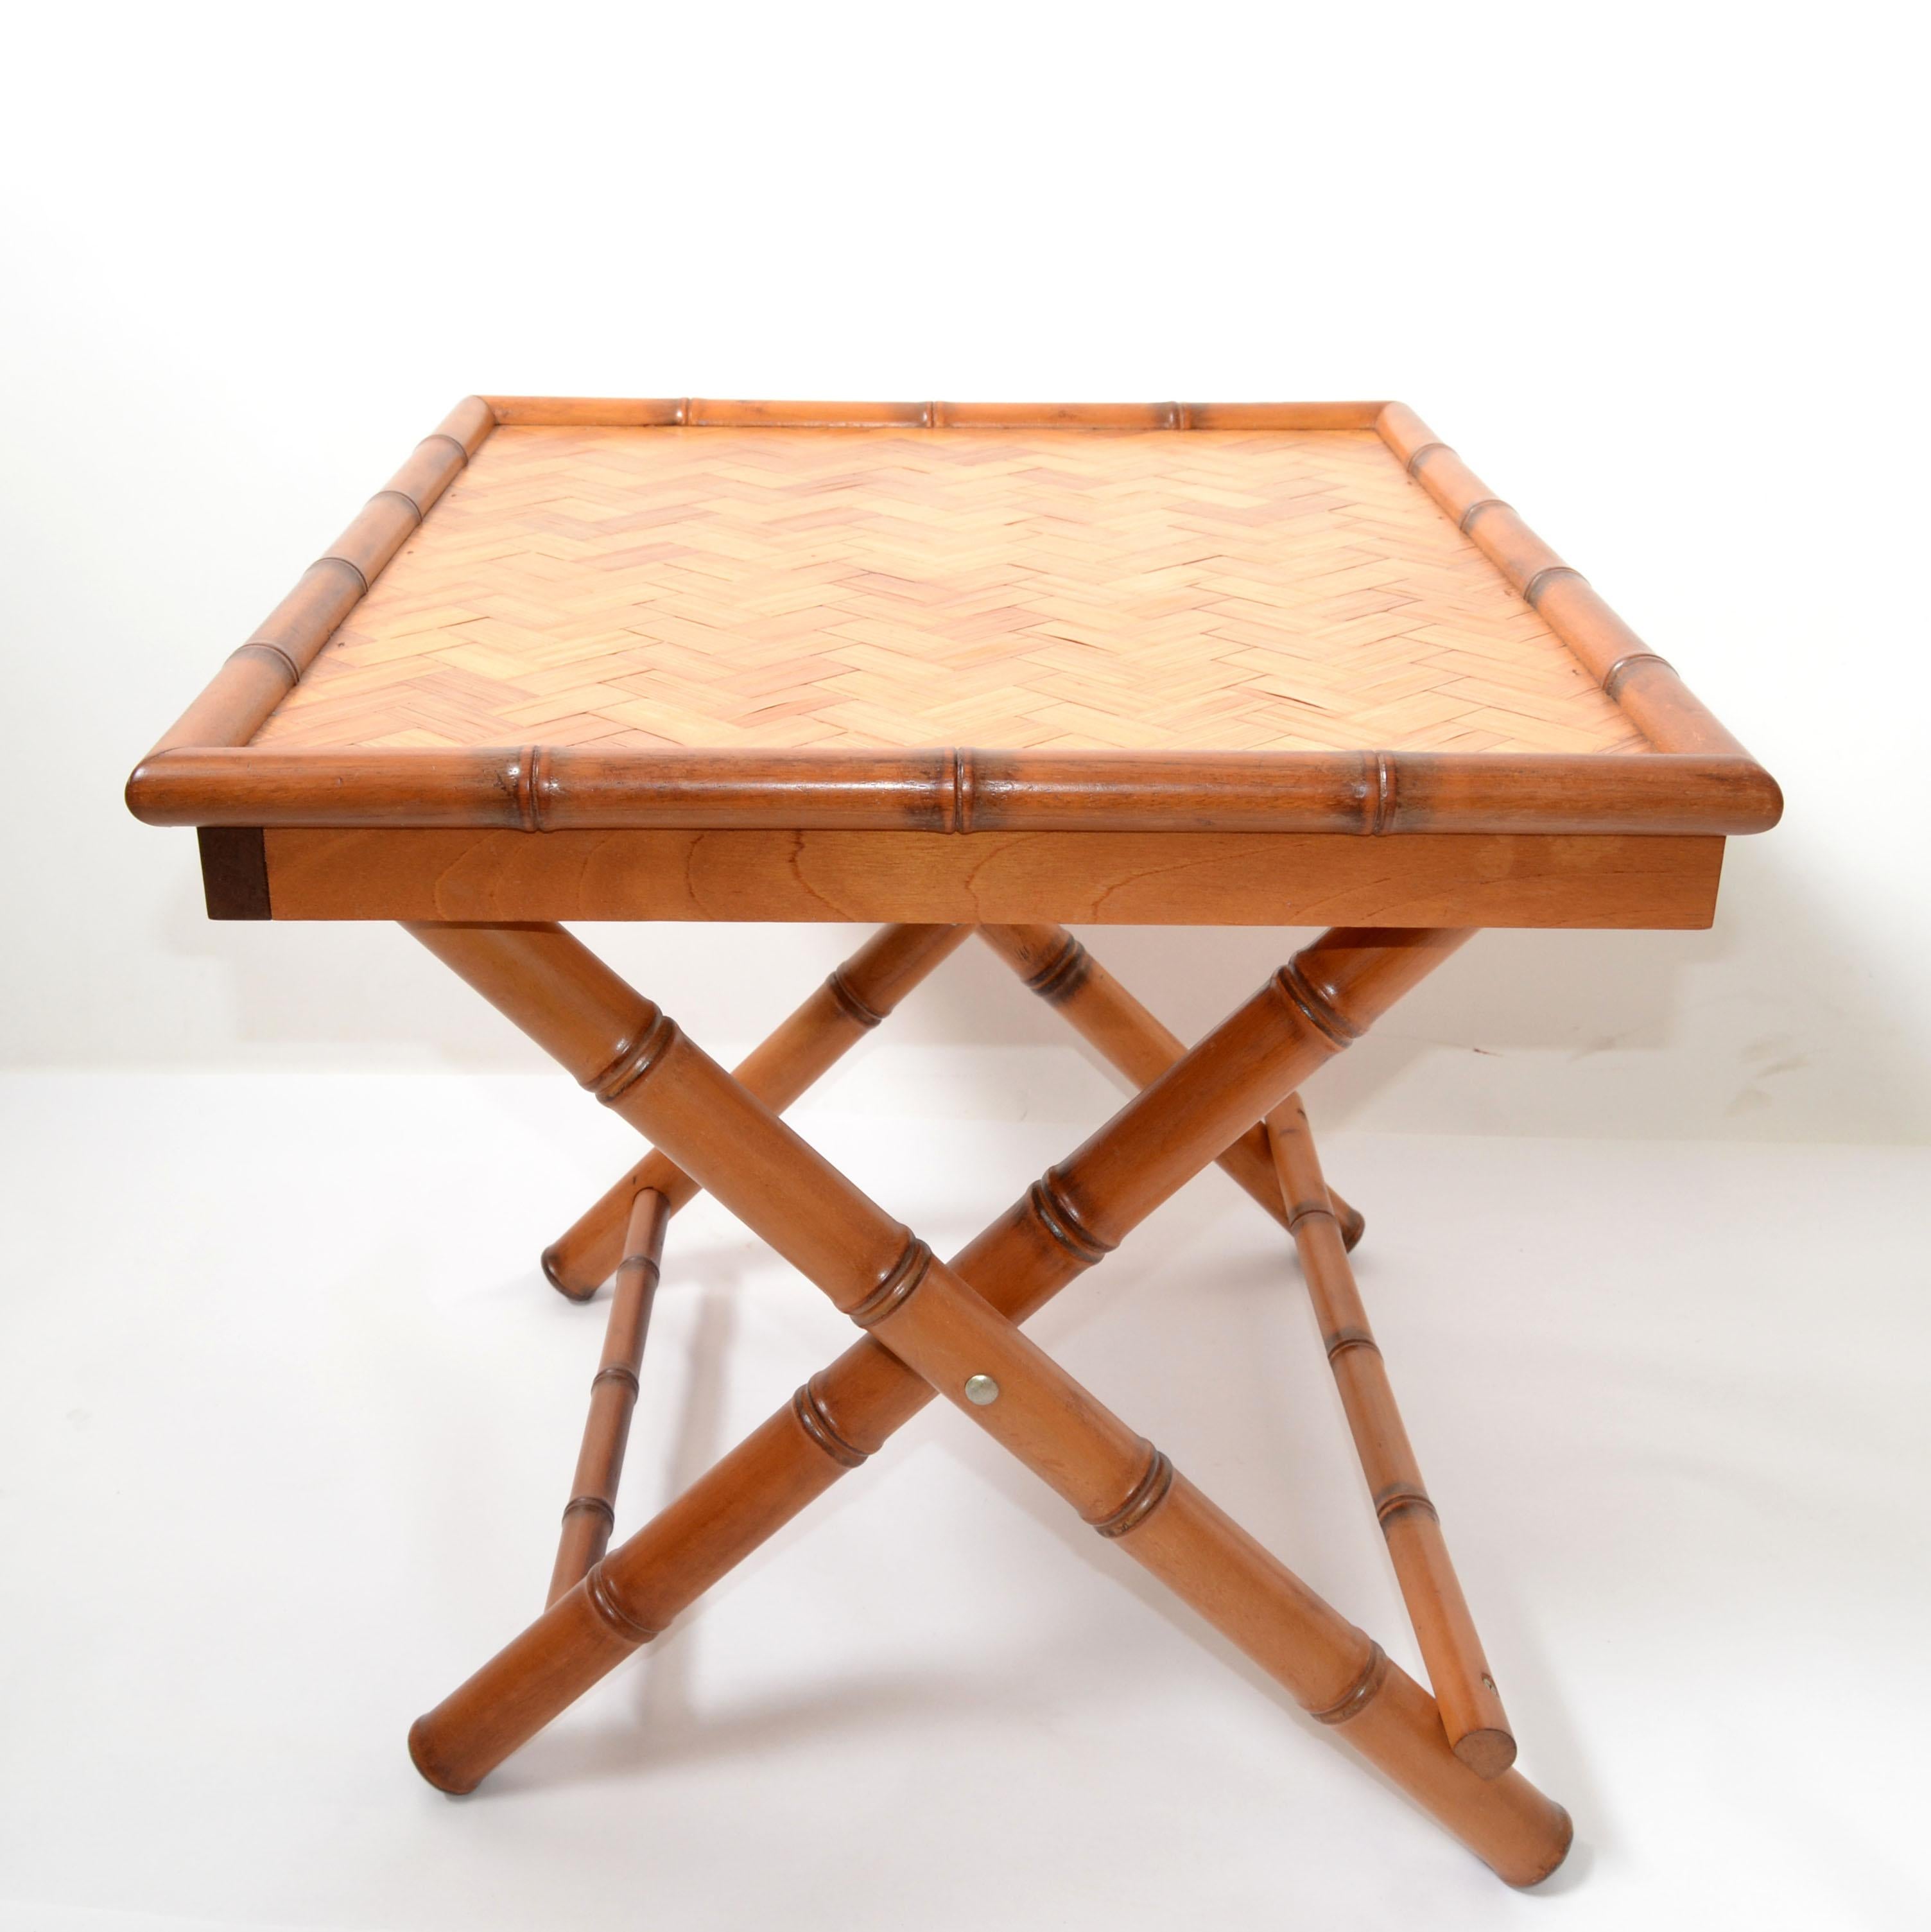 1970er Mid-Century Modern handgefertigter rechteckiger Bambus-Tilt-Top Serviertisch.
Dekorativer und stabiler X-Sockel.
Der Tisch lässt sich leicht falten und benötigt nur wenig Stauraum. Ideal zum Servieren Ihres Lieblingsdesserts.
Maße gefaltet: